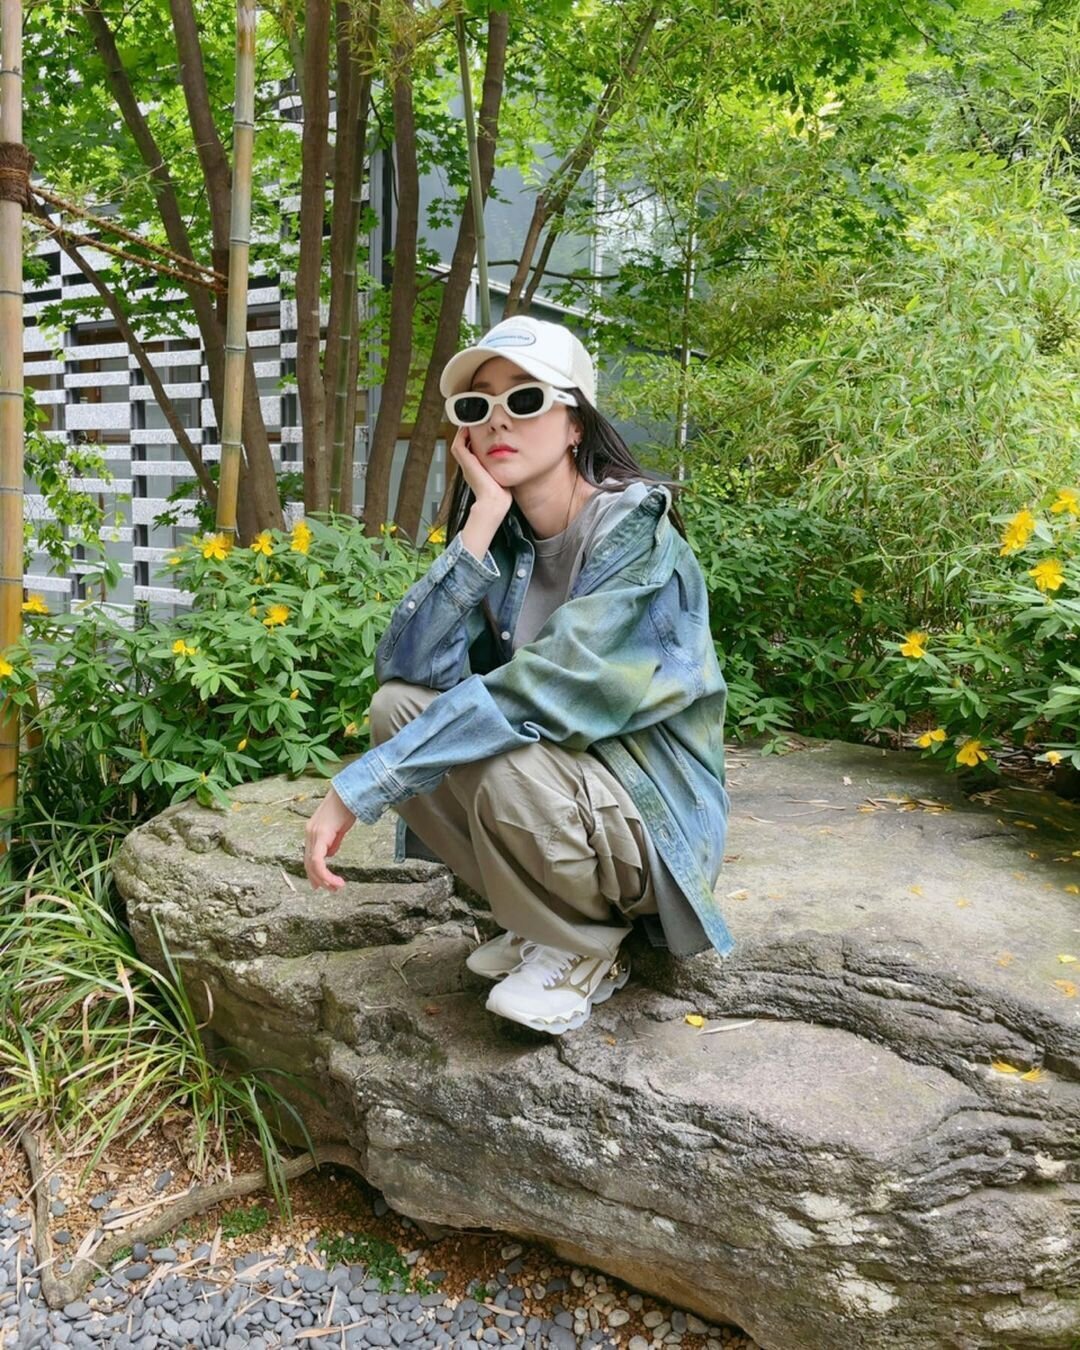 Dara Style on X: [SNS Update] 170703 - #DARA's Instagram post